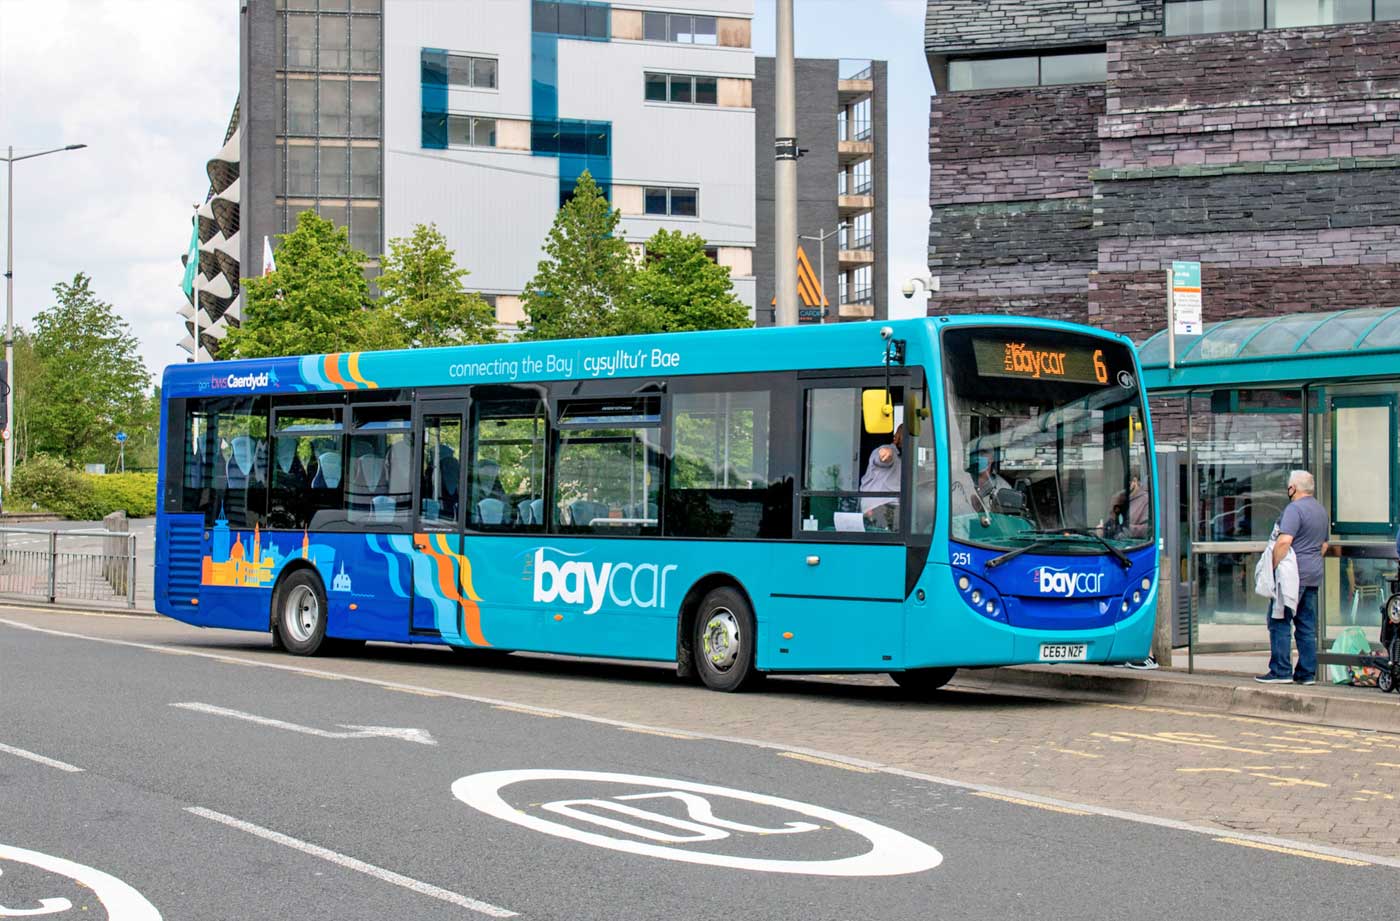 Cardiff City Public Transport - Baycar Bus System